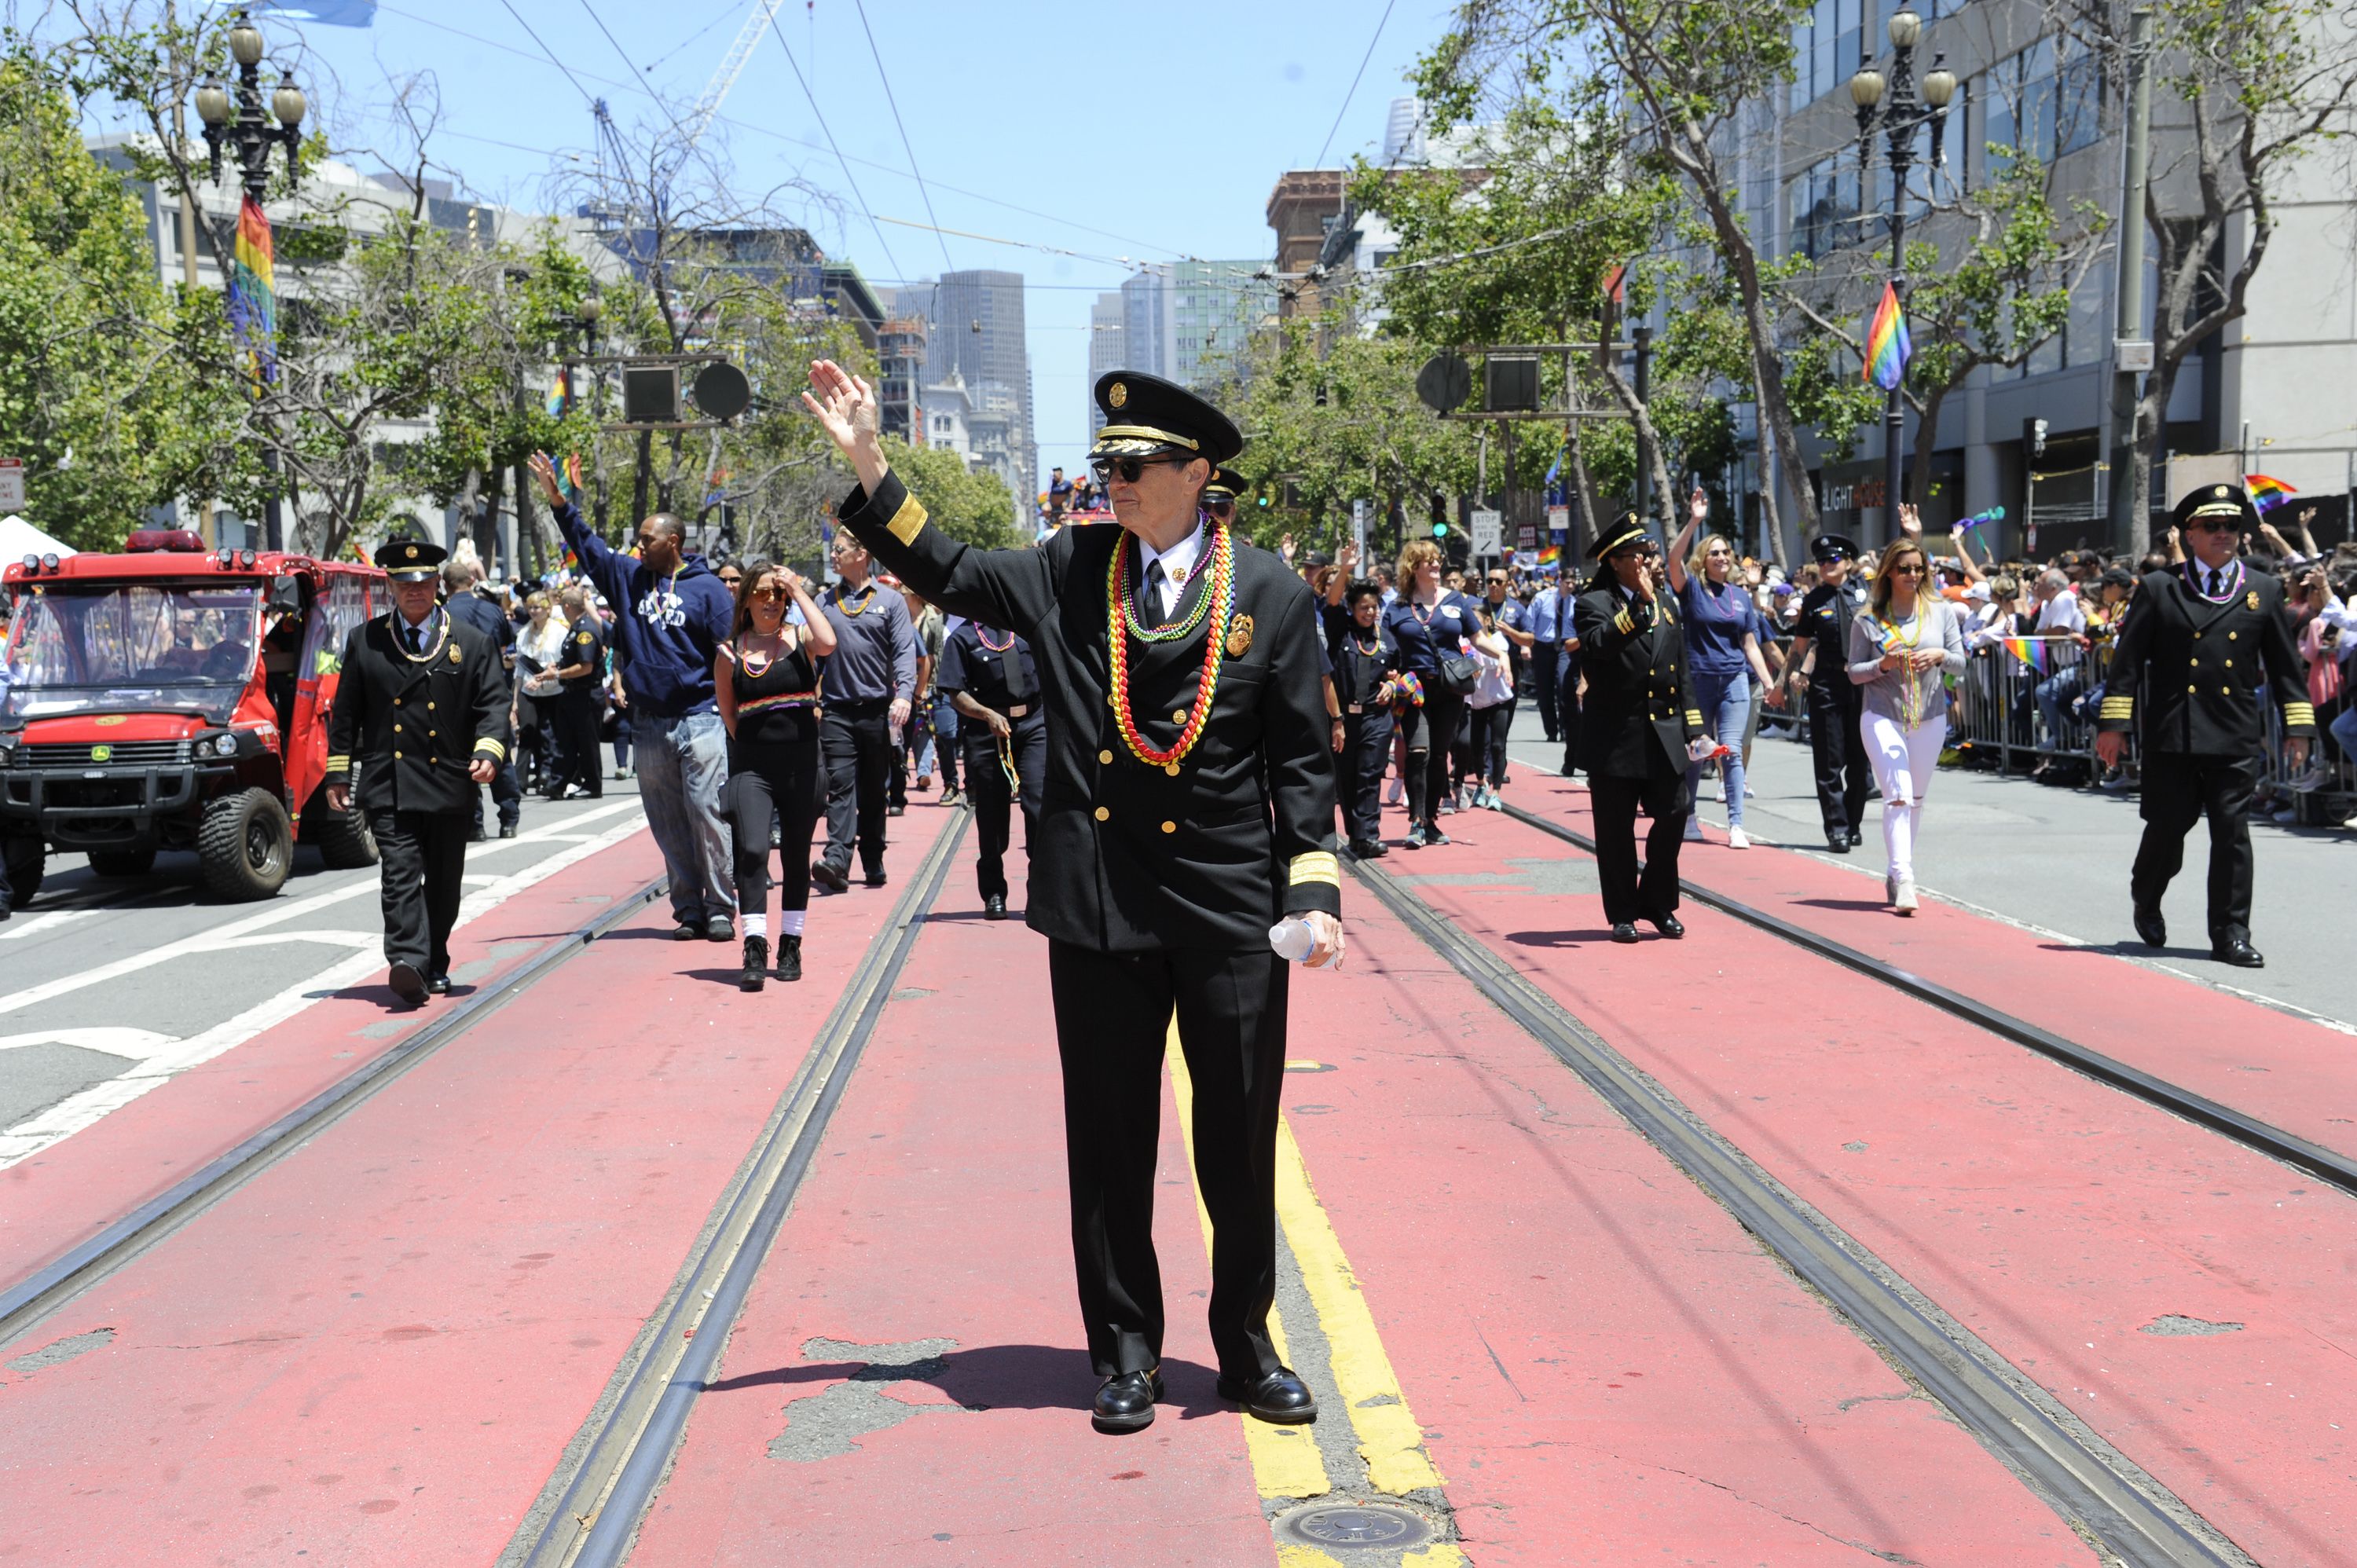 SF-LA set to make history by wearing pride uniforms